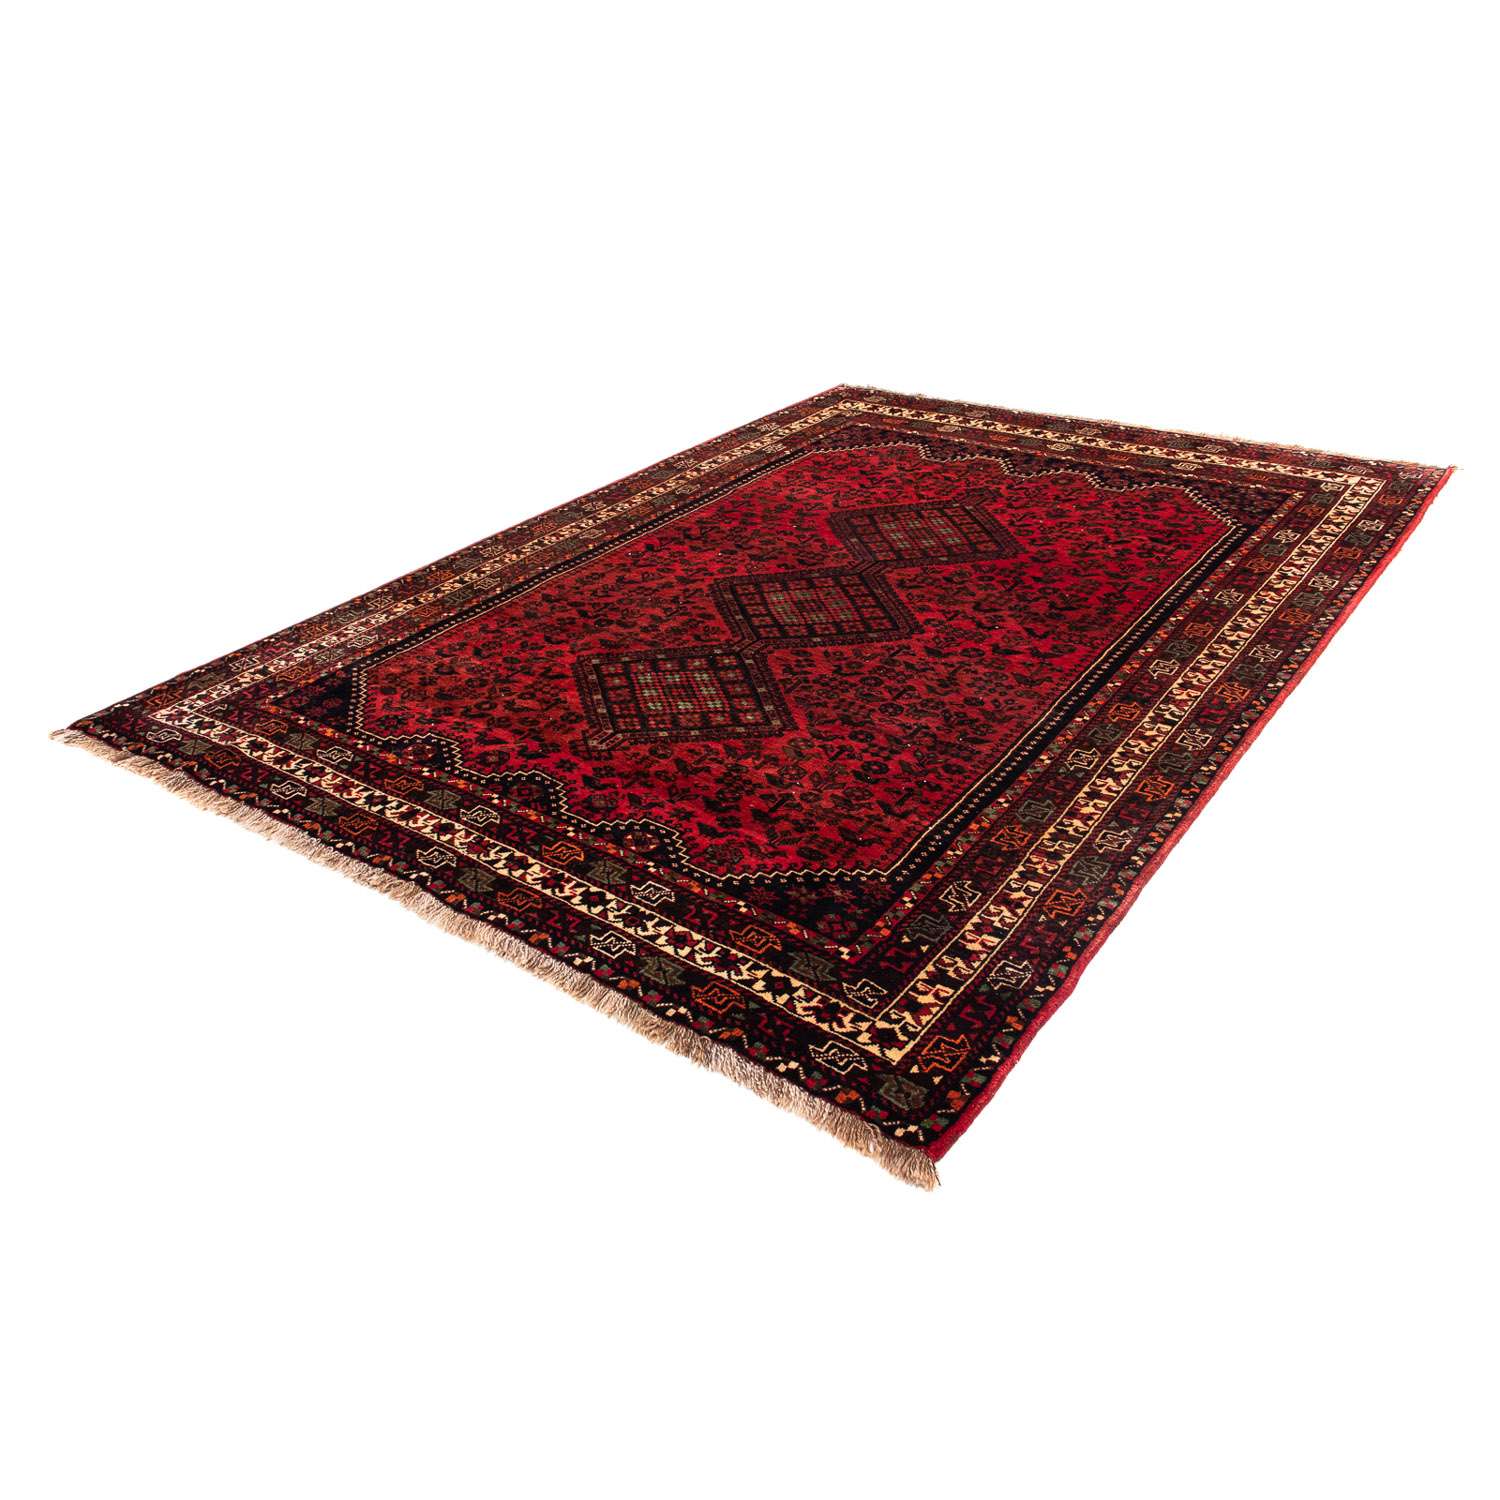 Alfombra persa - Nómada - 295 x 200 cm - rojo oscuro